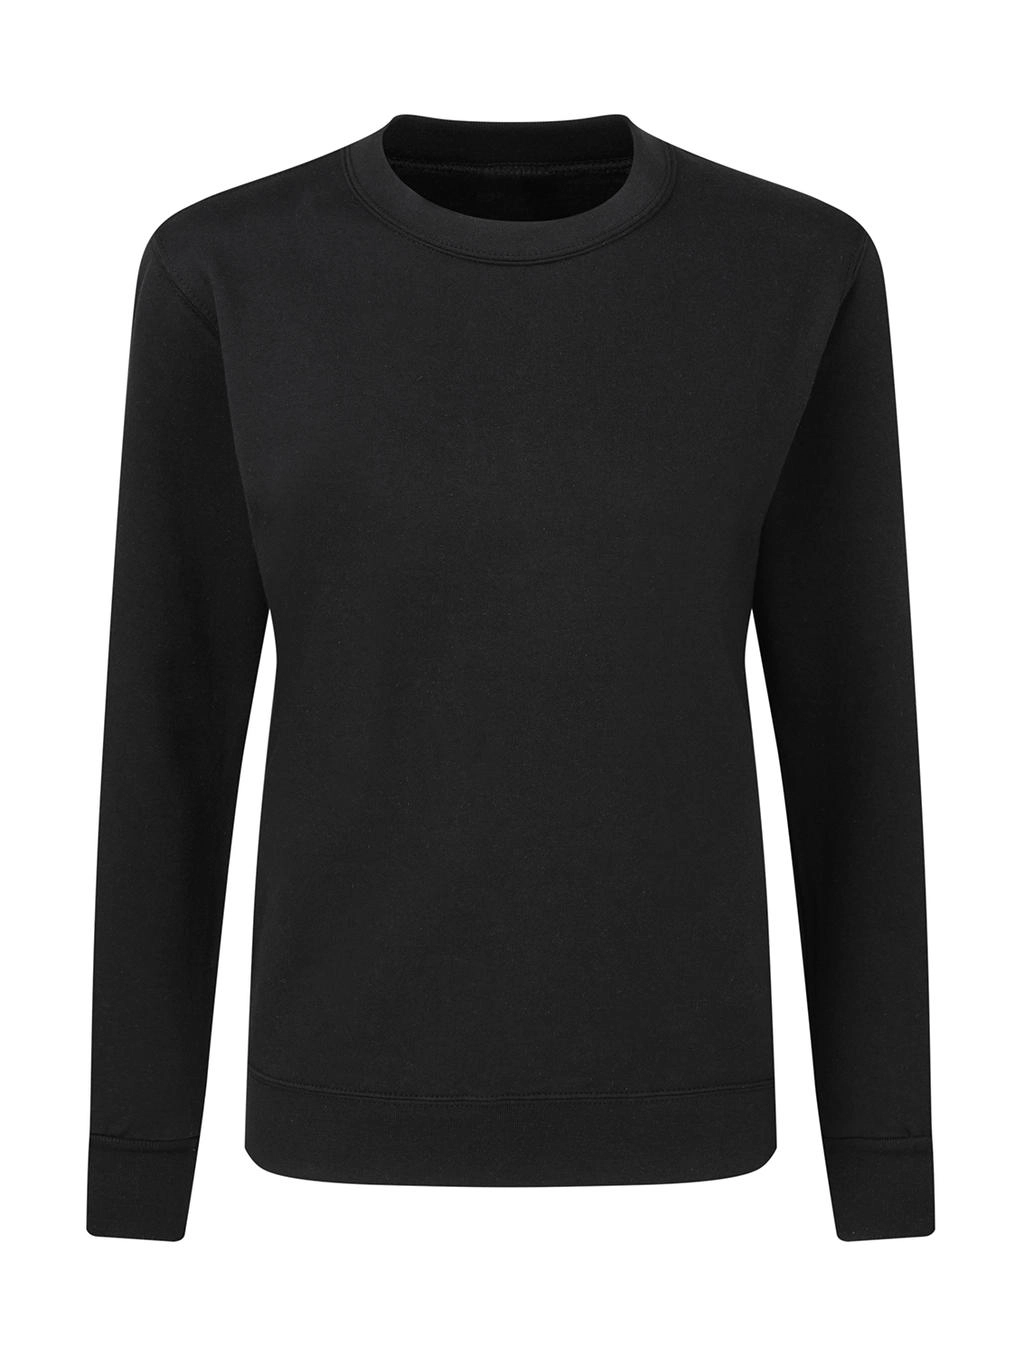 Crew Neck Sweatshirt Women zum Besticken und Bedrucken in der Farbe Black mit Ihren Logo, Schriftzug oder Motiv.